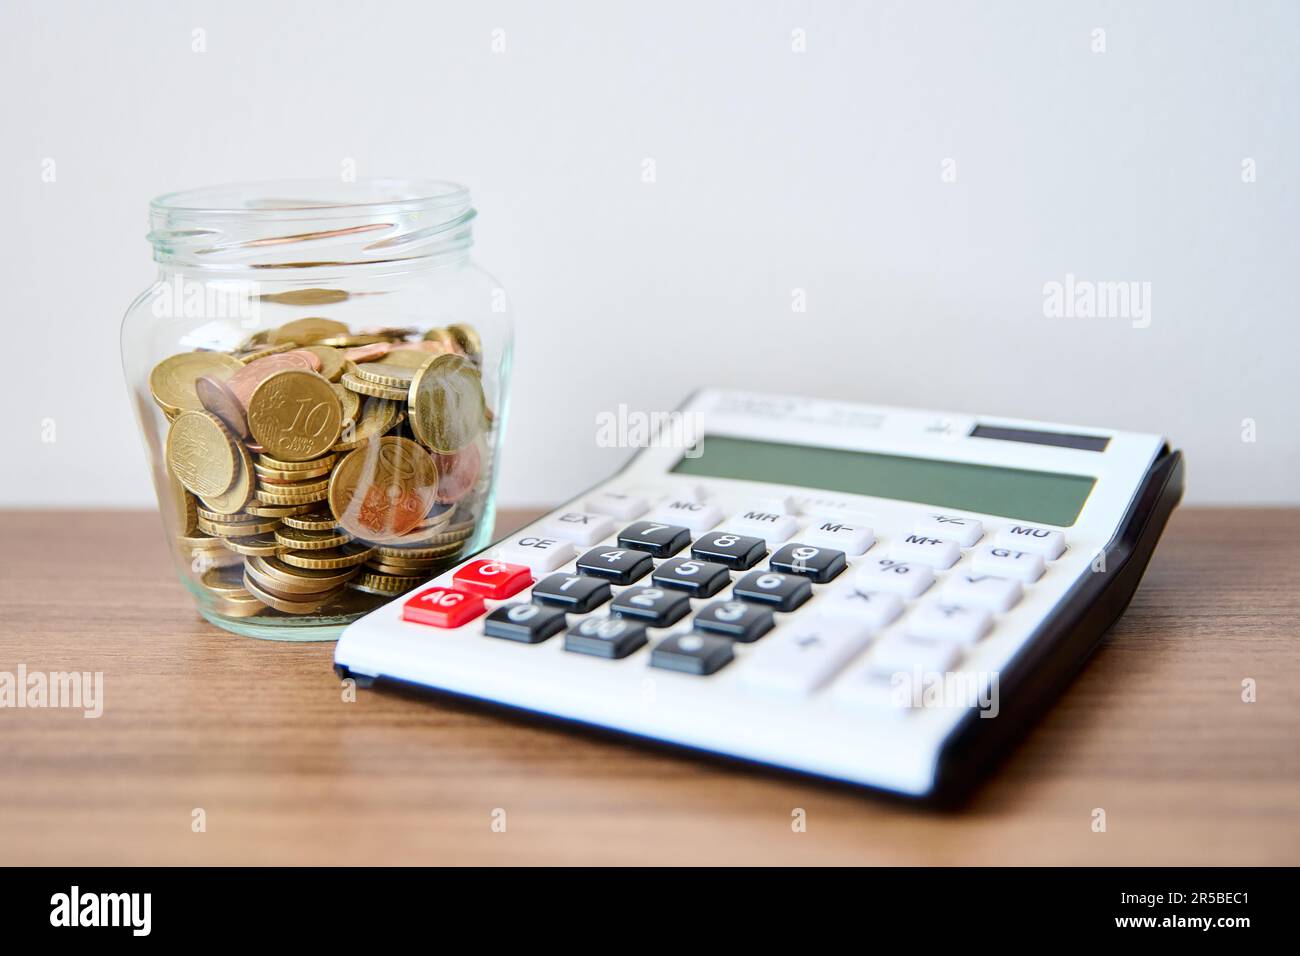 Une table en bois avec un pot en verre contenant des pièces de monnaie et une calculatrice située sur le dessus Banque D'Images